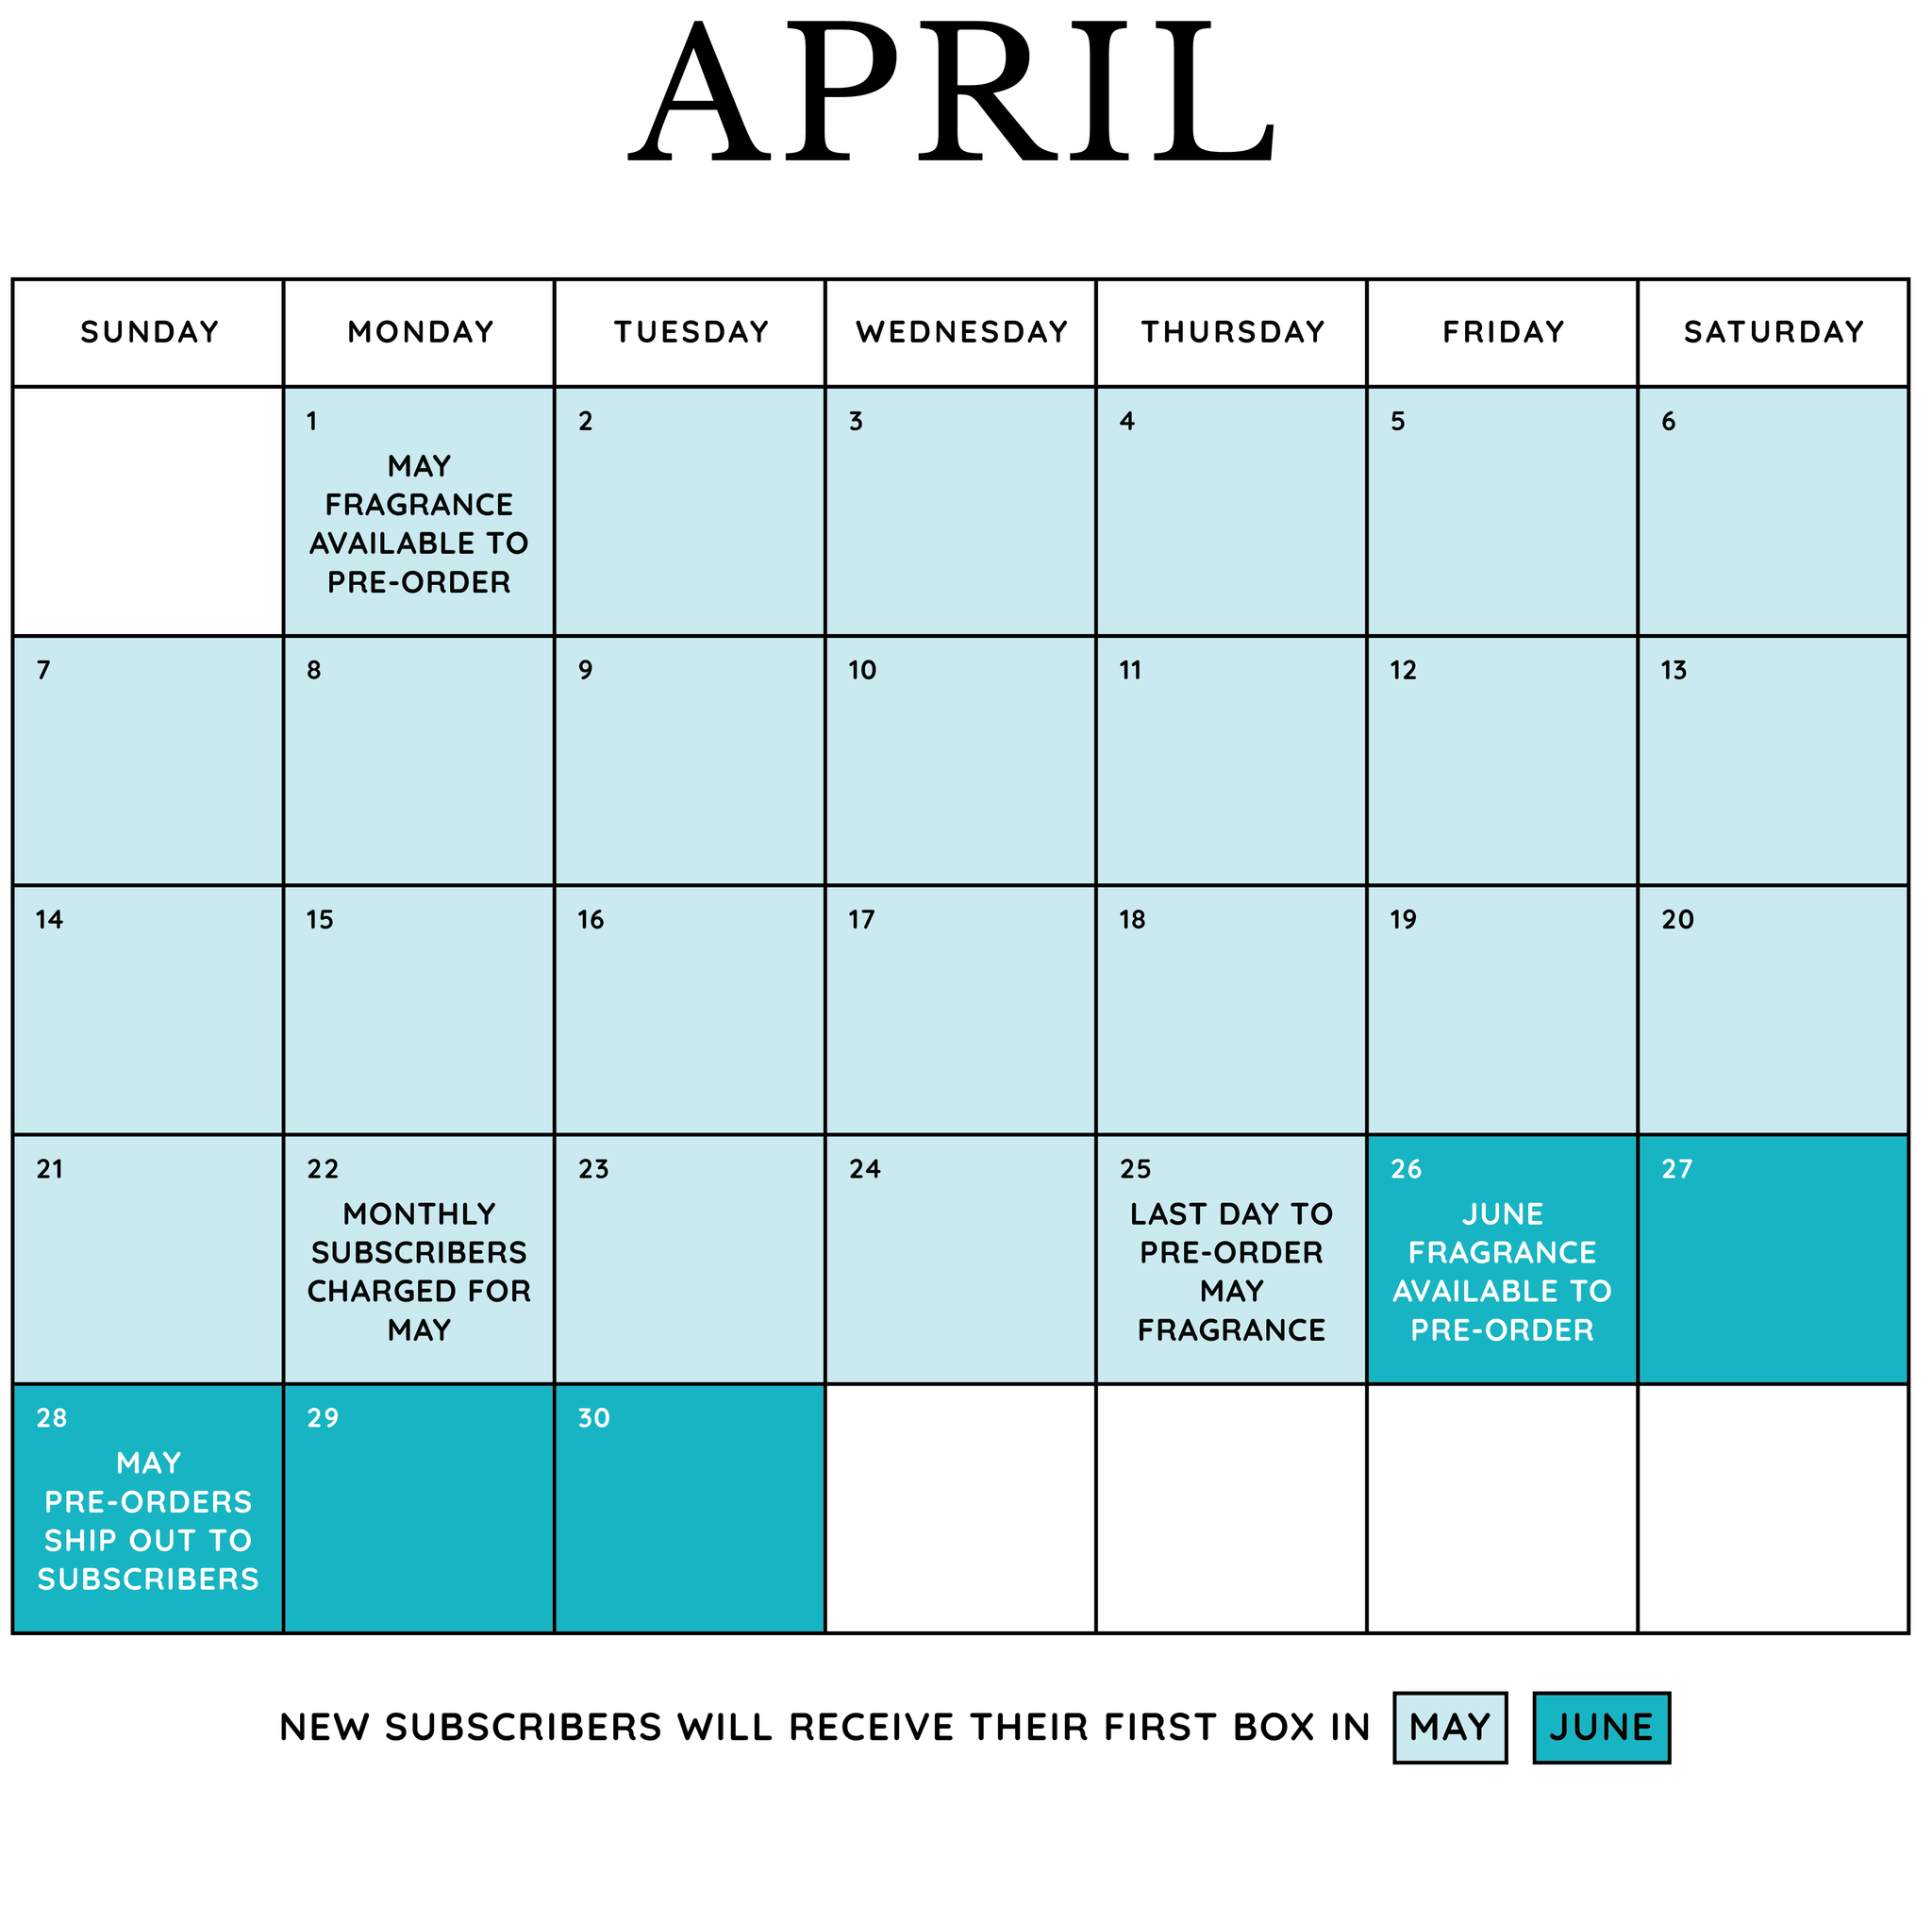 April subscription calendar